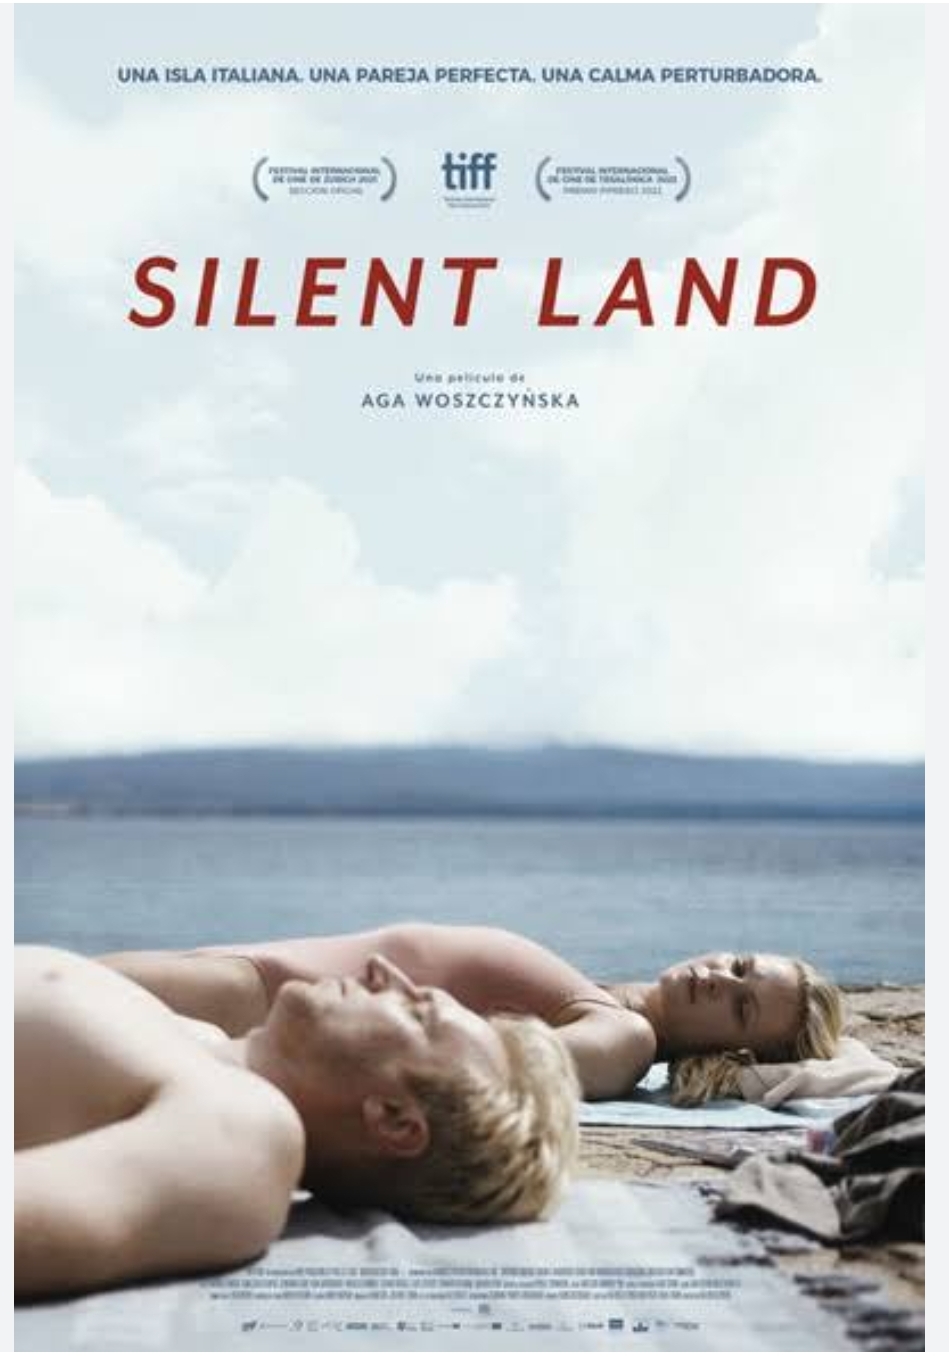 Silent land (Agnieszka Woszczynska)